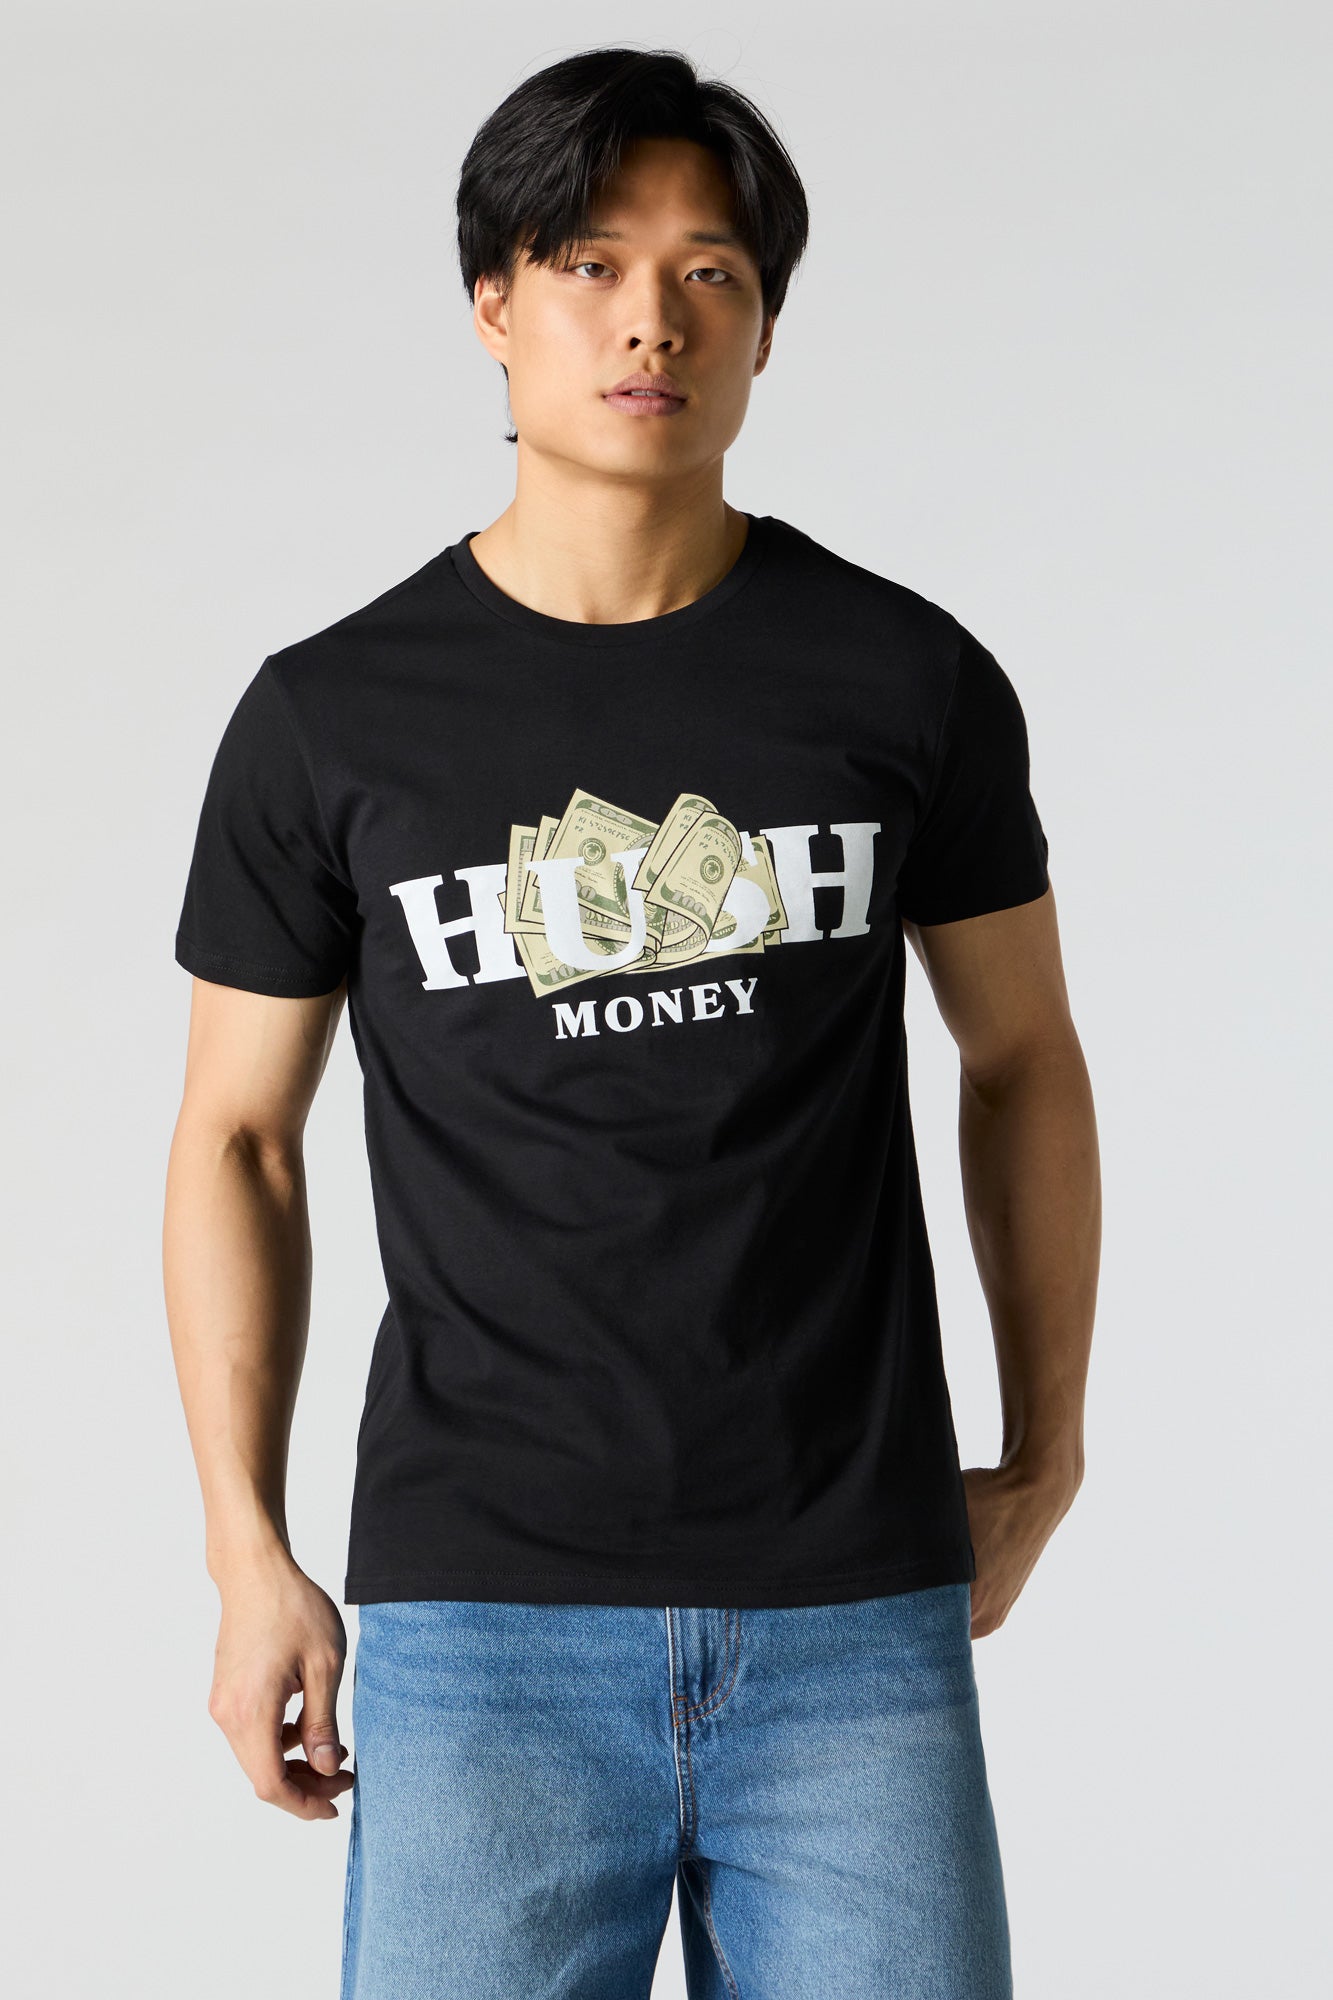 Hush Money Graphic T-Shirt